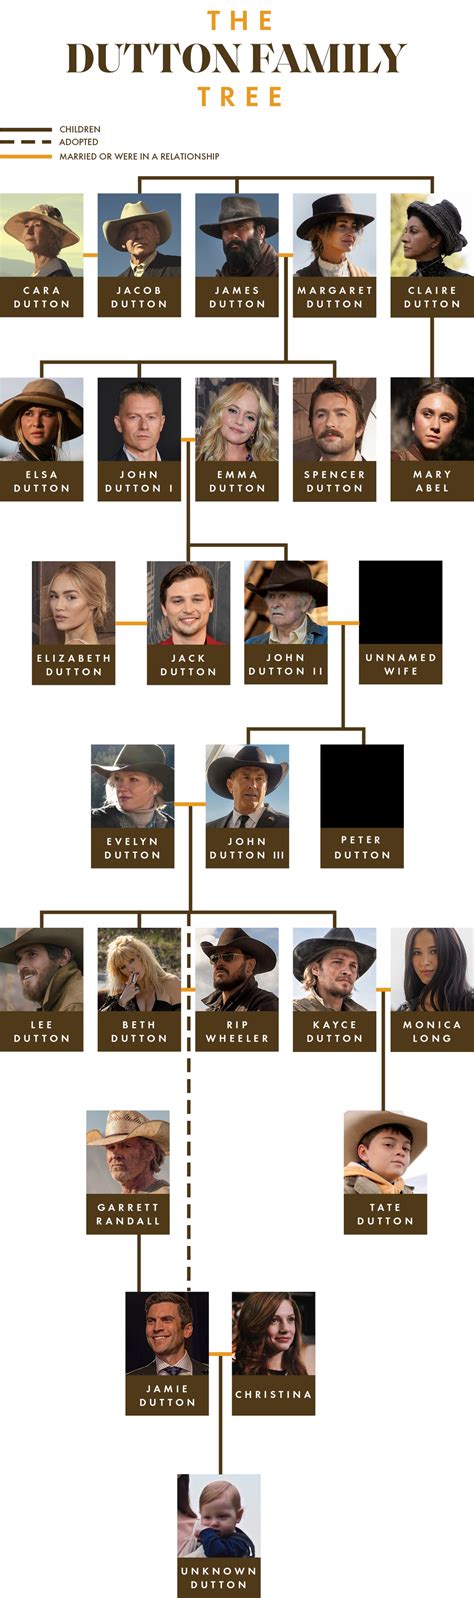 yellowstone show family tree